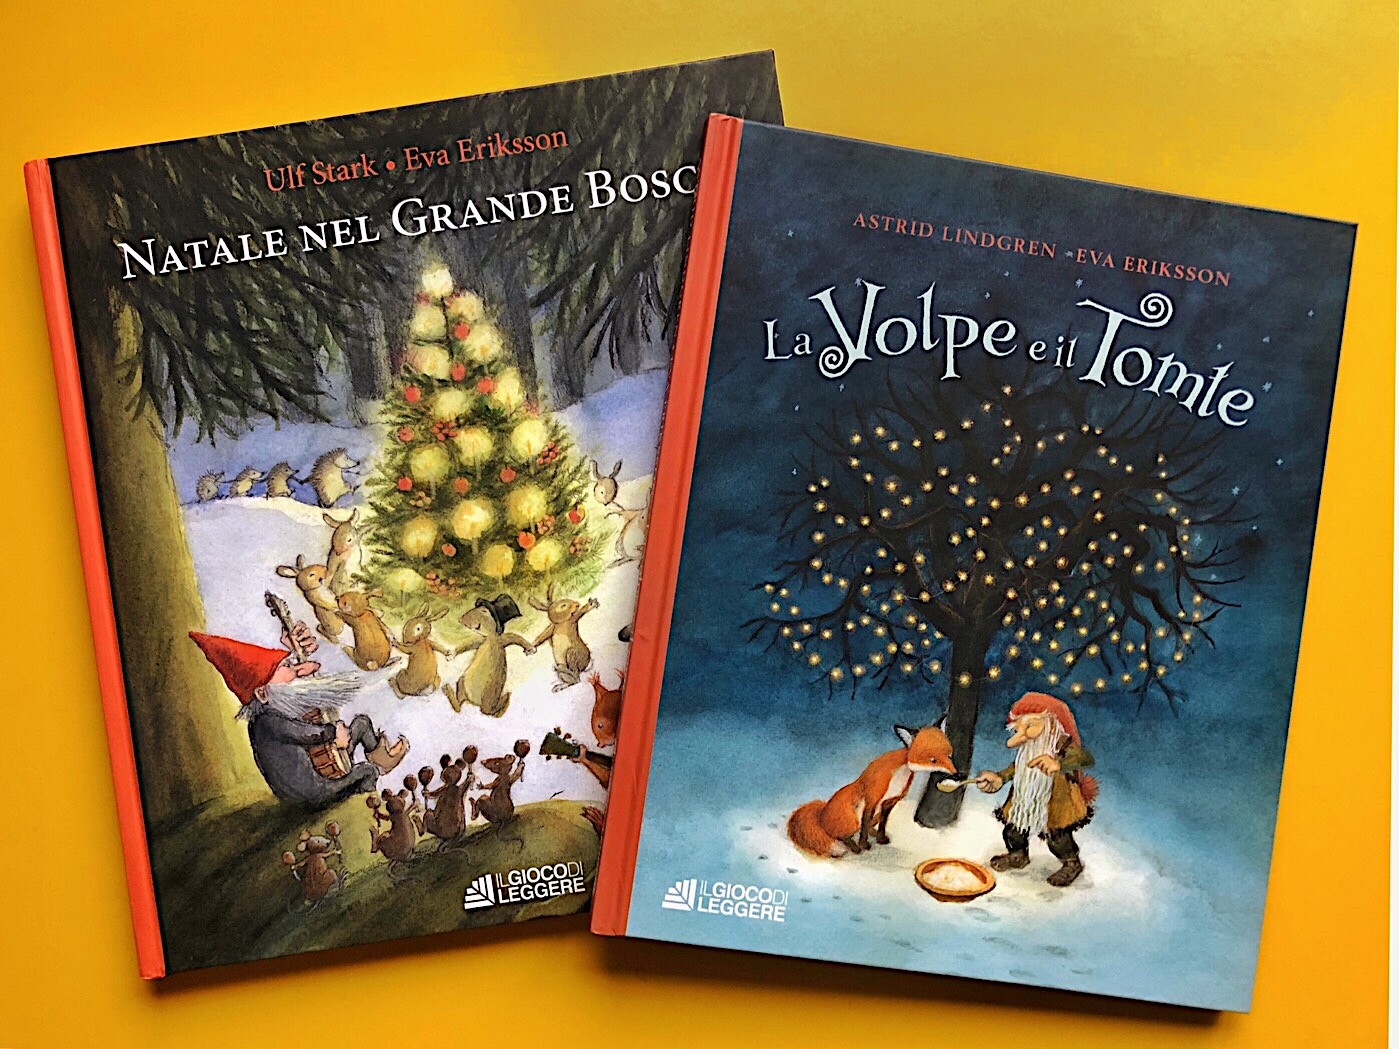 Poesie Di Natale Per Bambini Di 7 Anni.La Volpe E Il Il Tomte Natale Nel Grande Bosco Lindgren Stark Eriksson Il Gioco Di Leggere